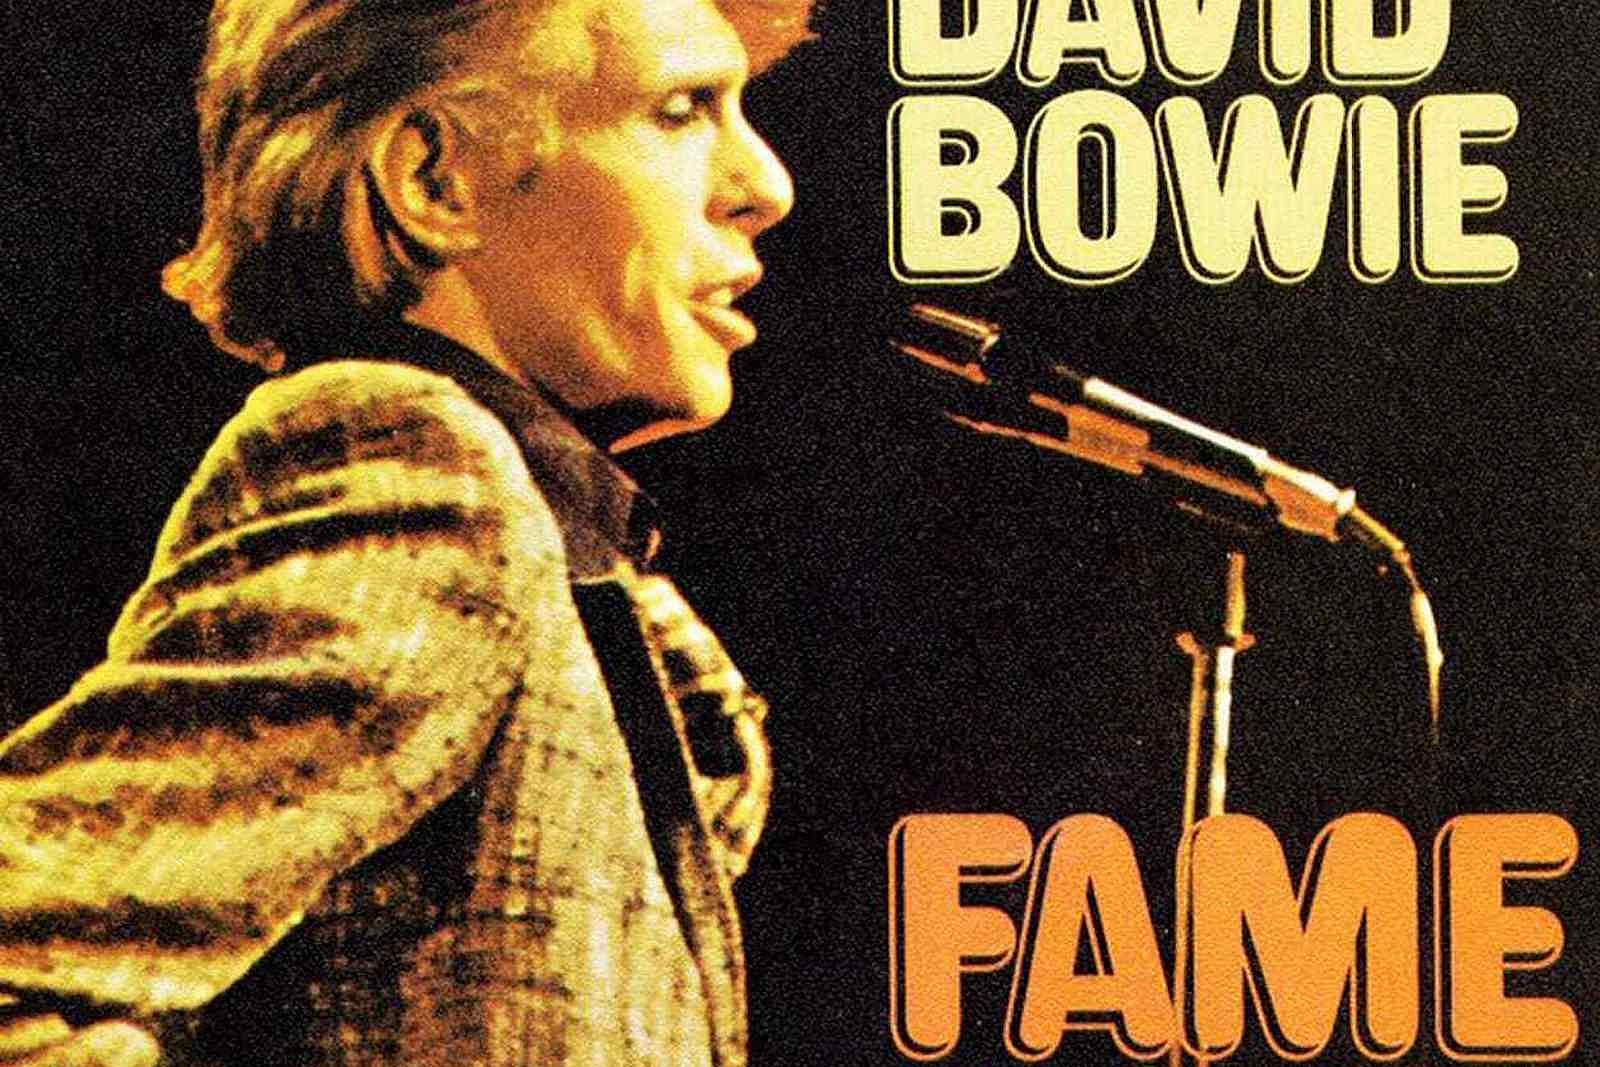 Fame - David Bowie - Testo Traduzione Significato